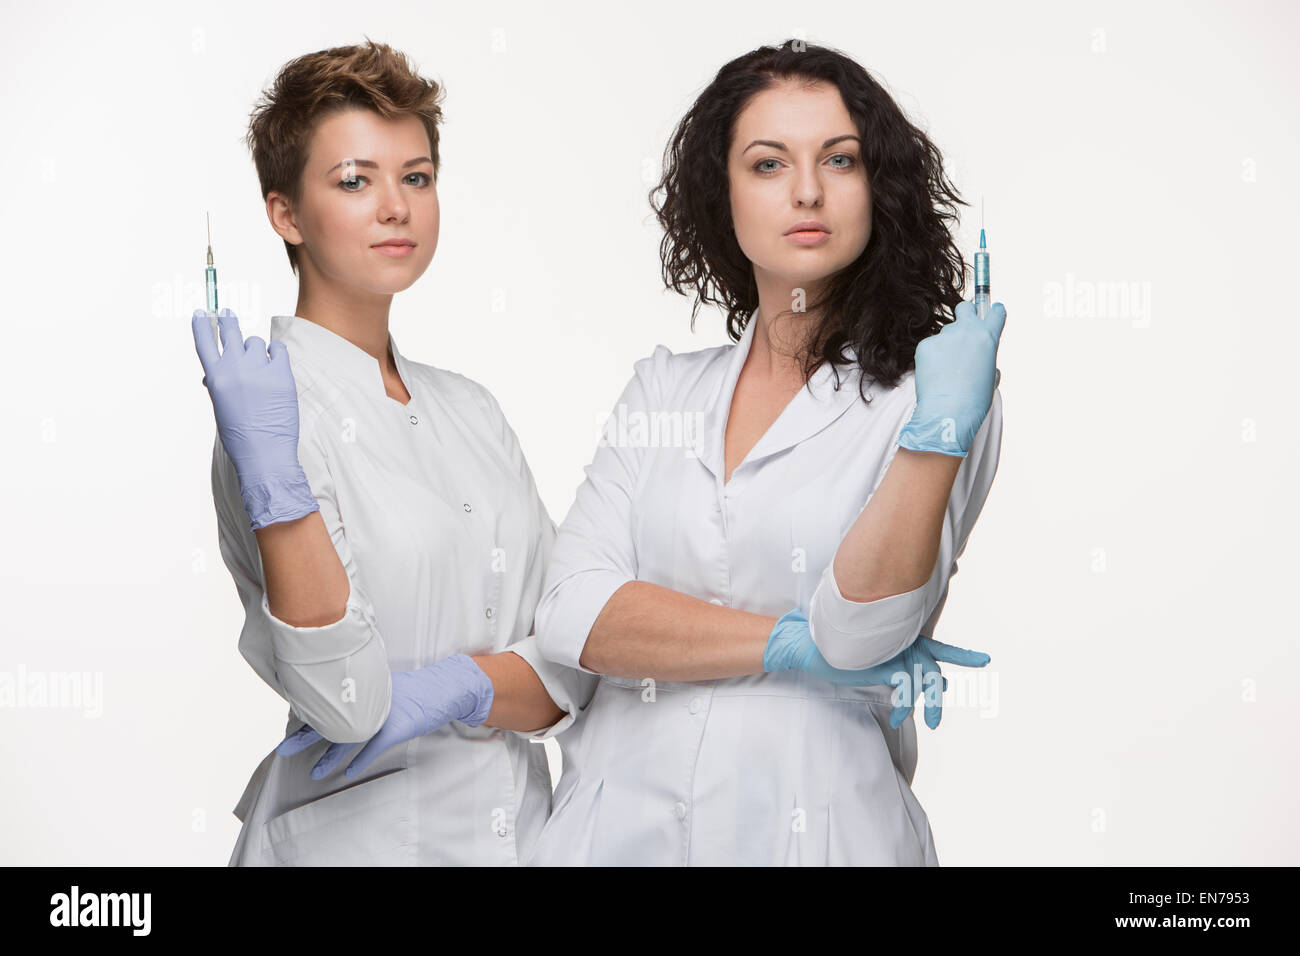 Две женщины врачи. Два врача женщины. Медицинская сестра со шприцом двое. Две женщины врача разного возраста. Две девушка врач со шприцом.